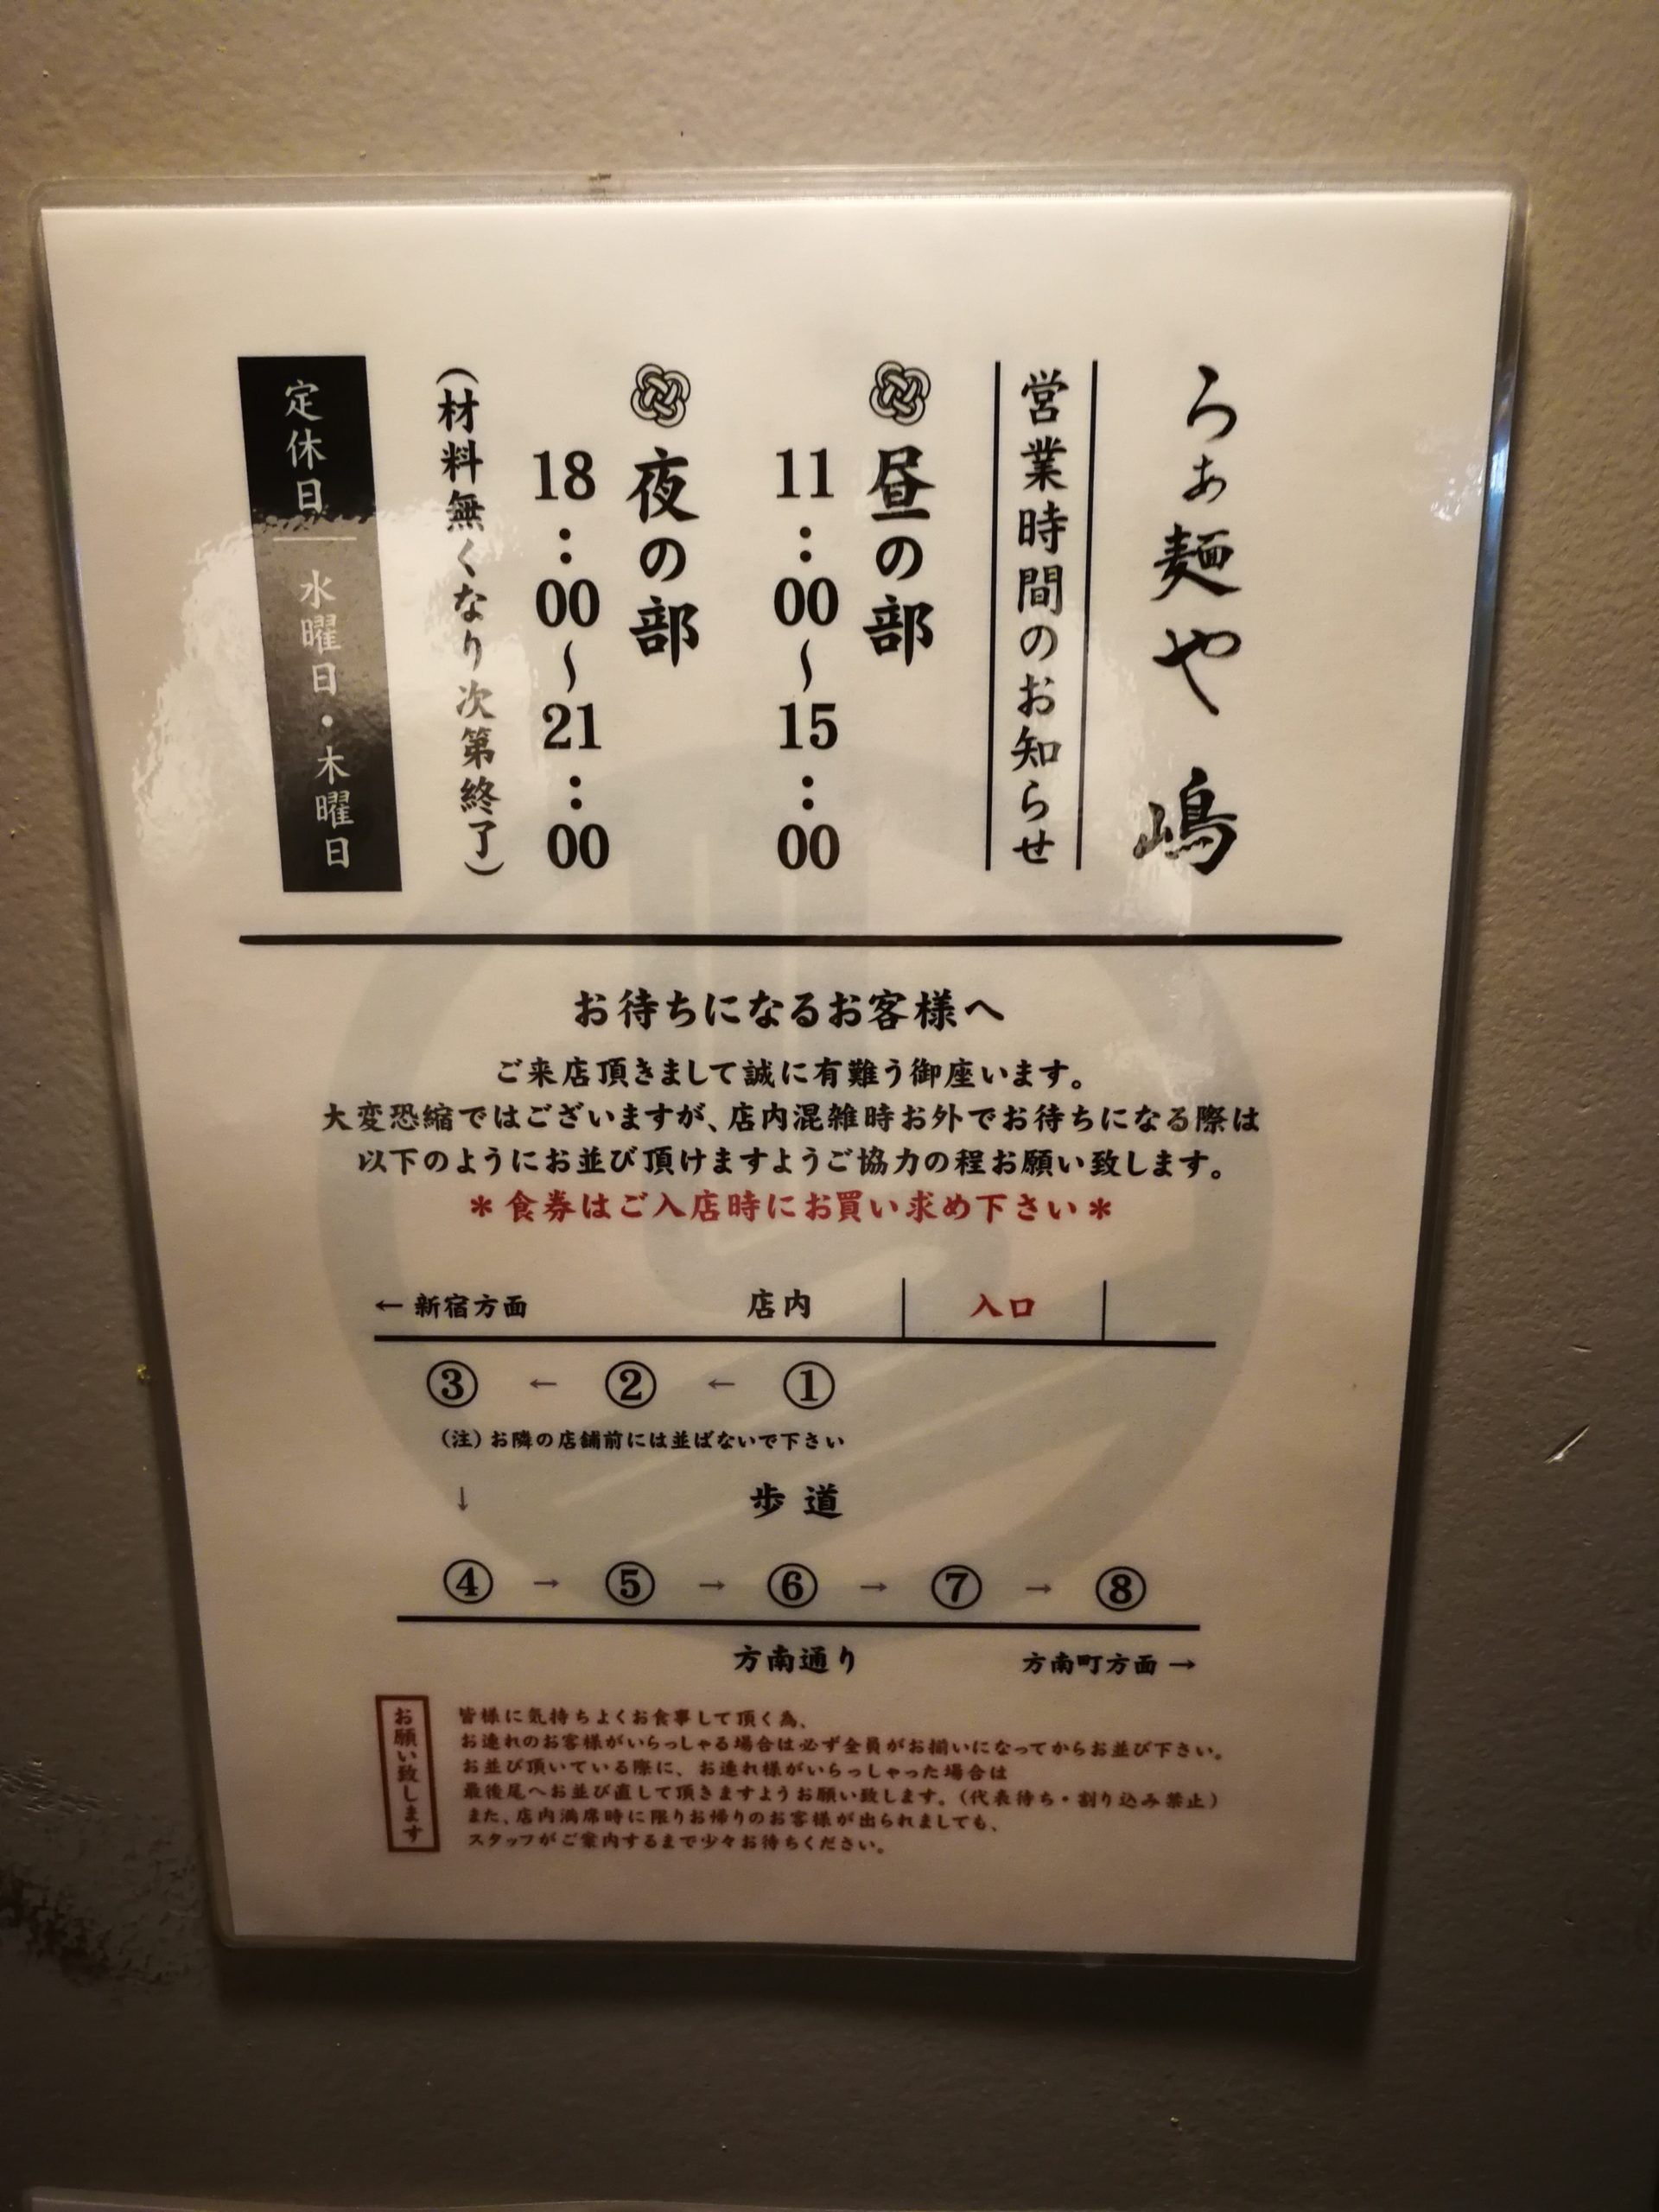 ramenya-shima-menu-03